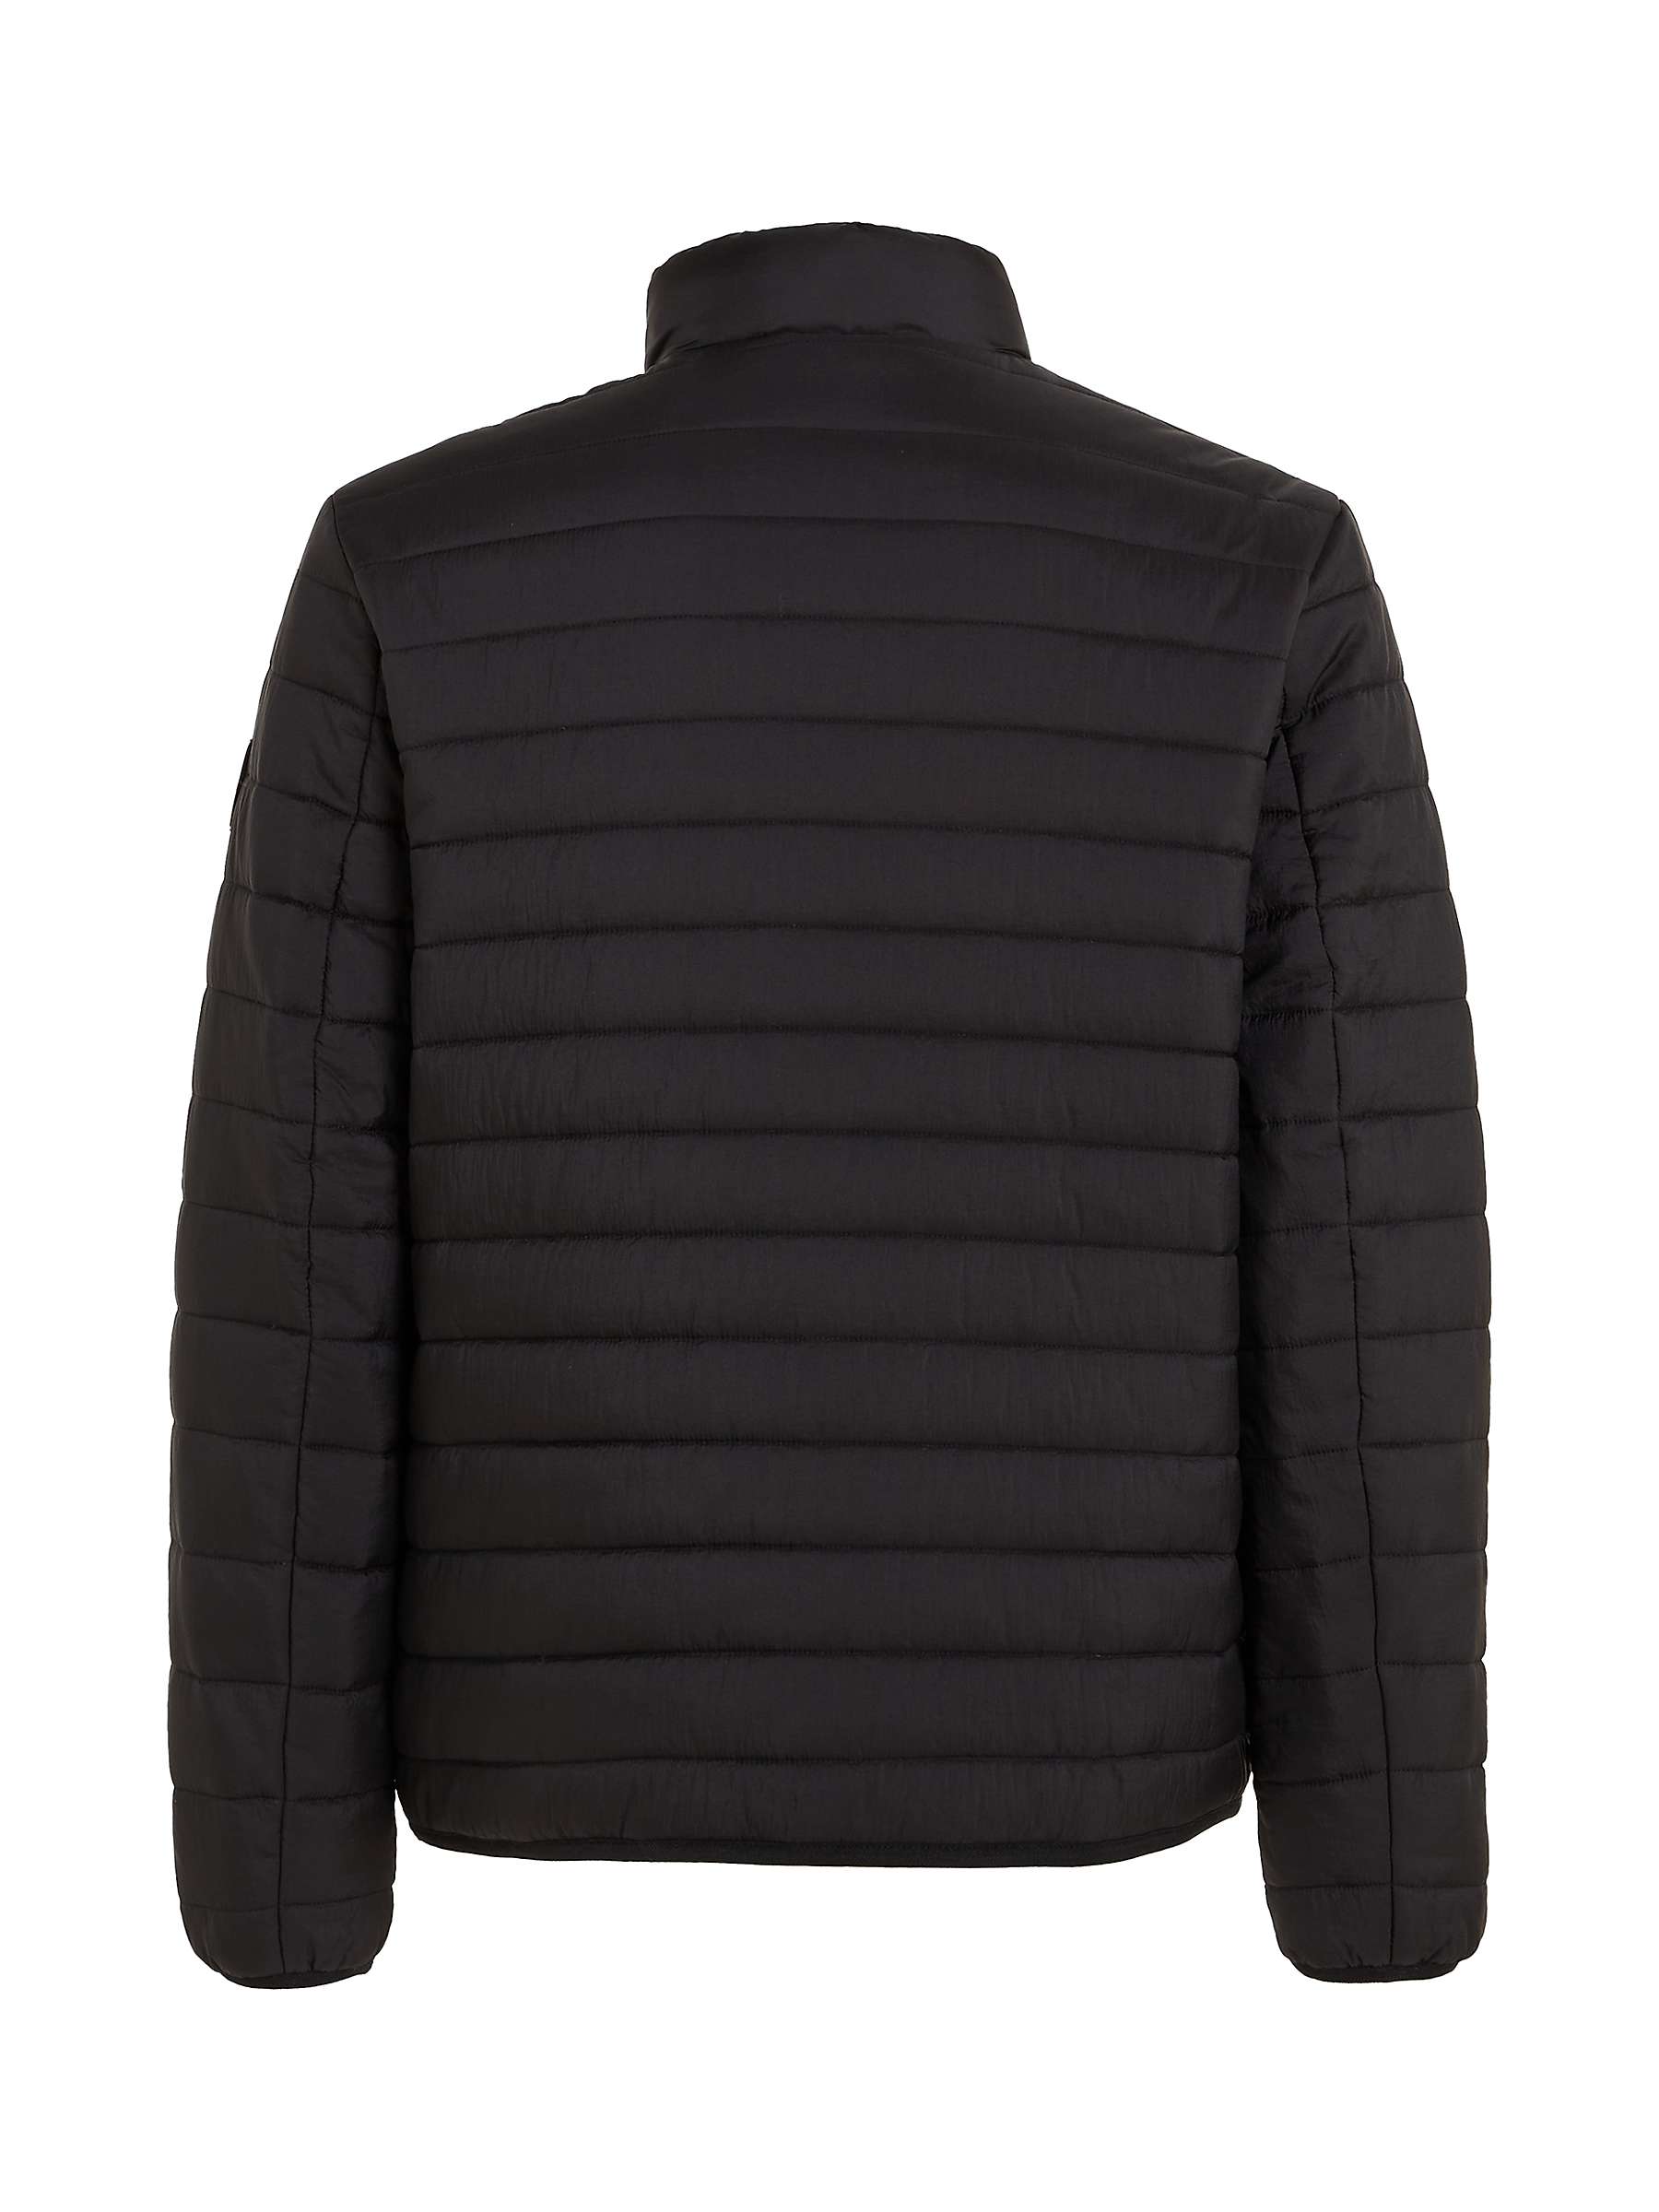 Buy Calvin Klein Crinkle Quilt Jacket, Black Online at johnlewis.com